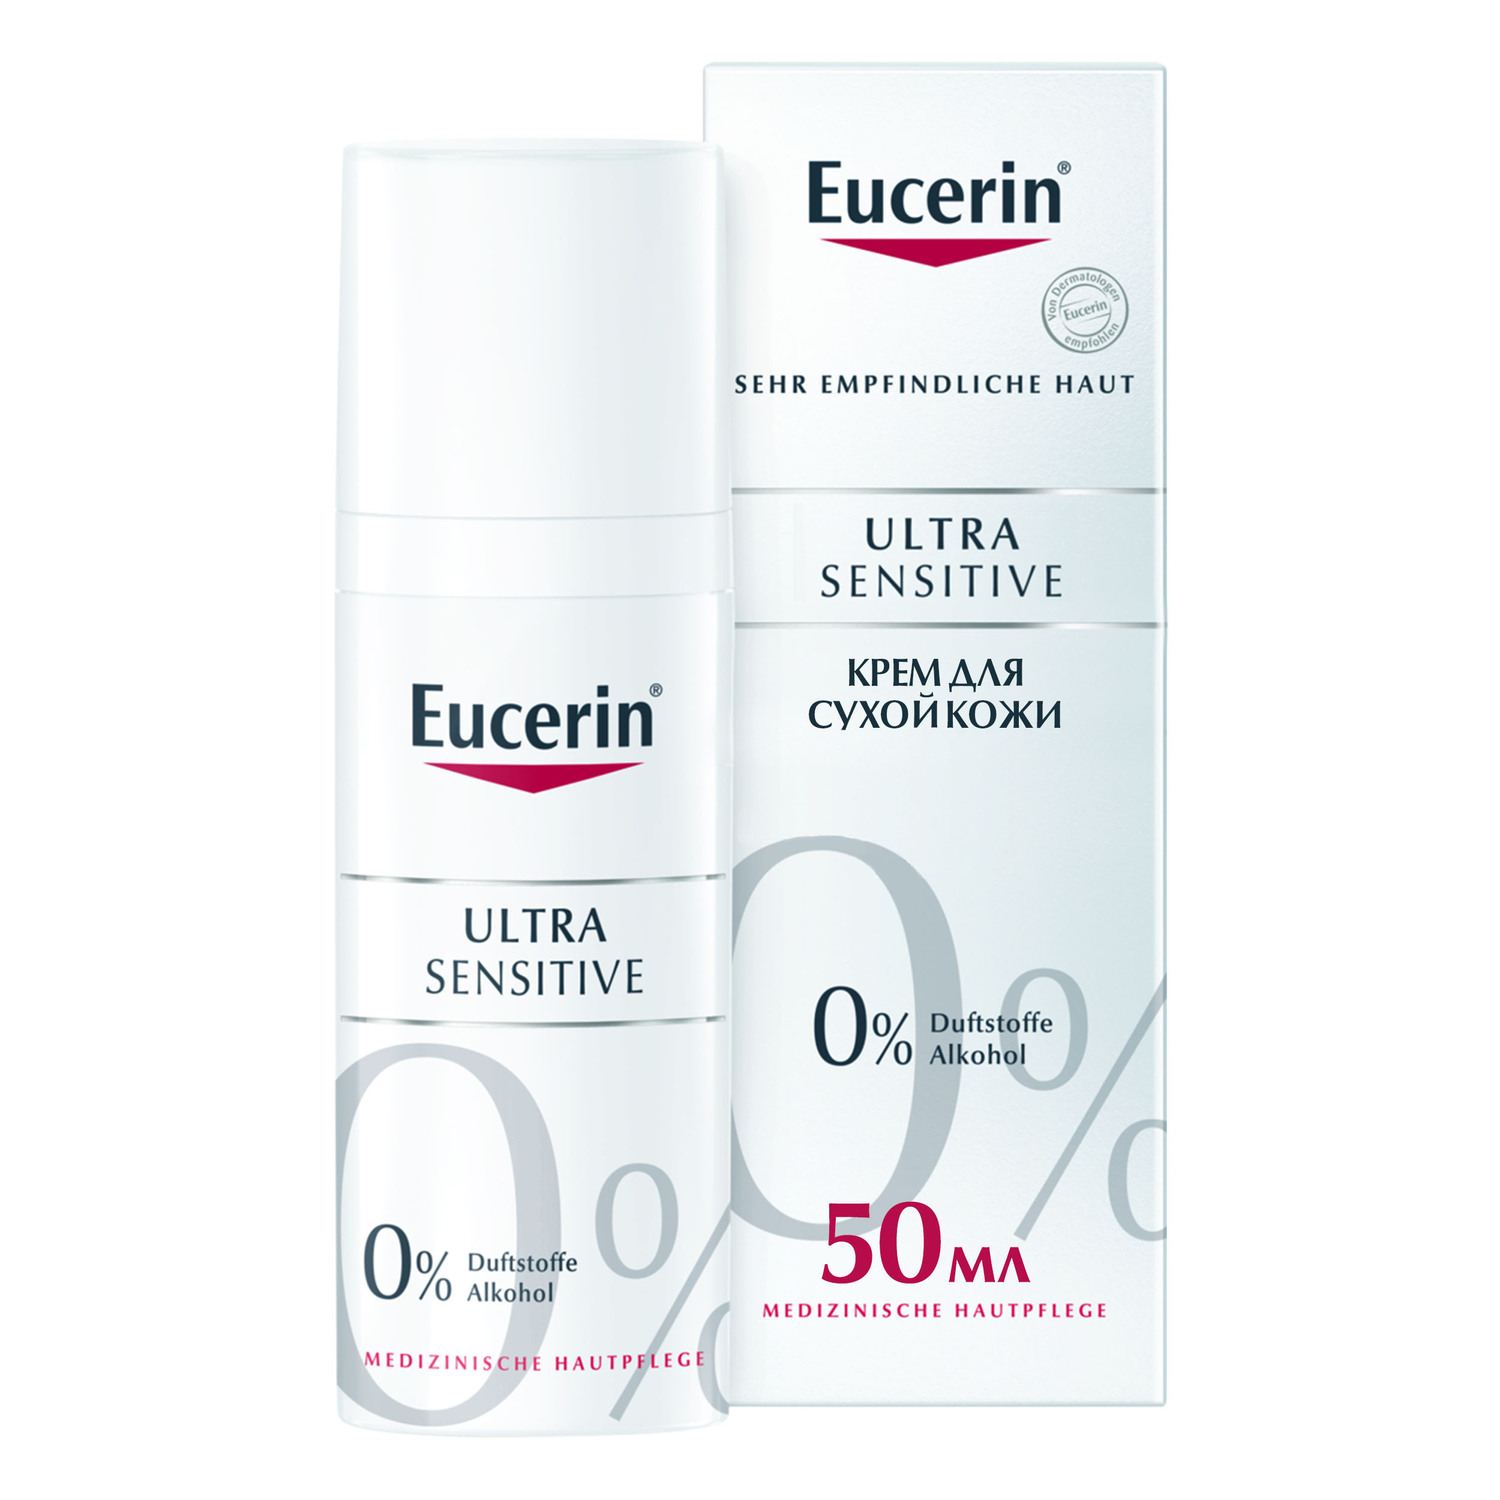 Eucerin Успокаивающий крем для чувствительной сухой кожи, 50 мл (Eucerin, UltraSensitive & AntiRedness) крем для лица eucerin успокаивающий крем antiredness